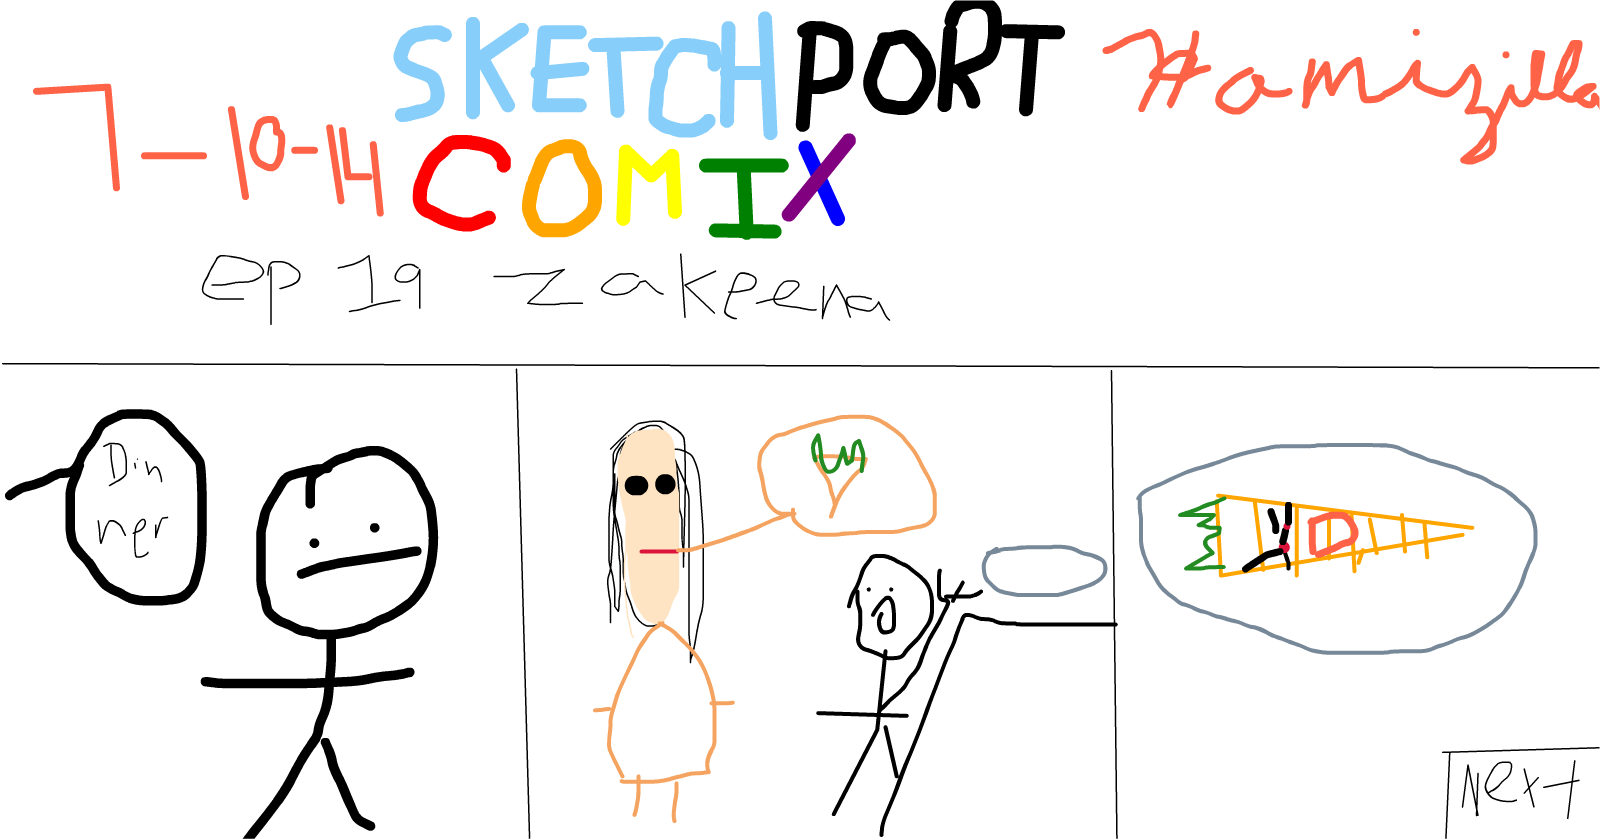 Sketchport Comix: Episode 19 Zakeena